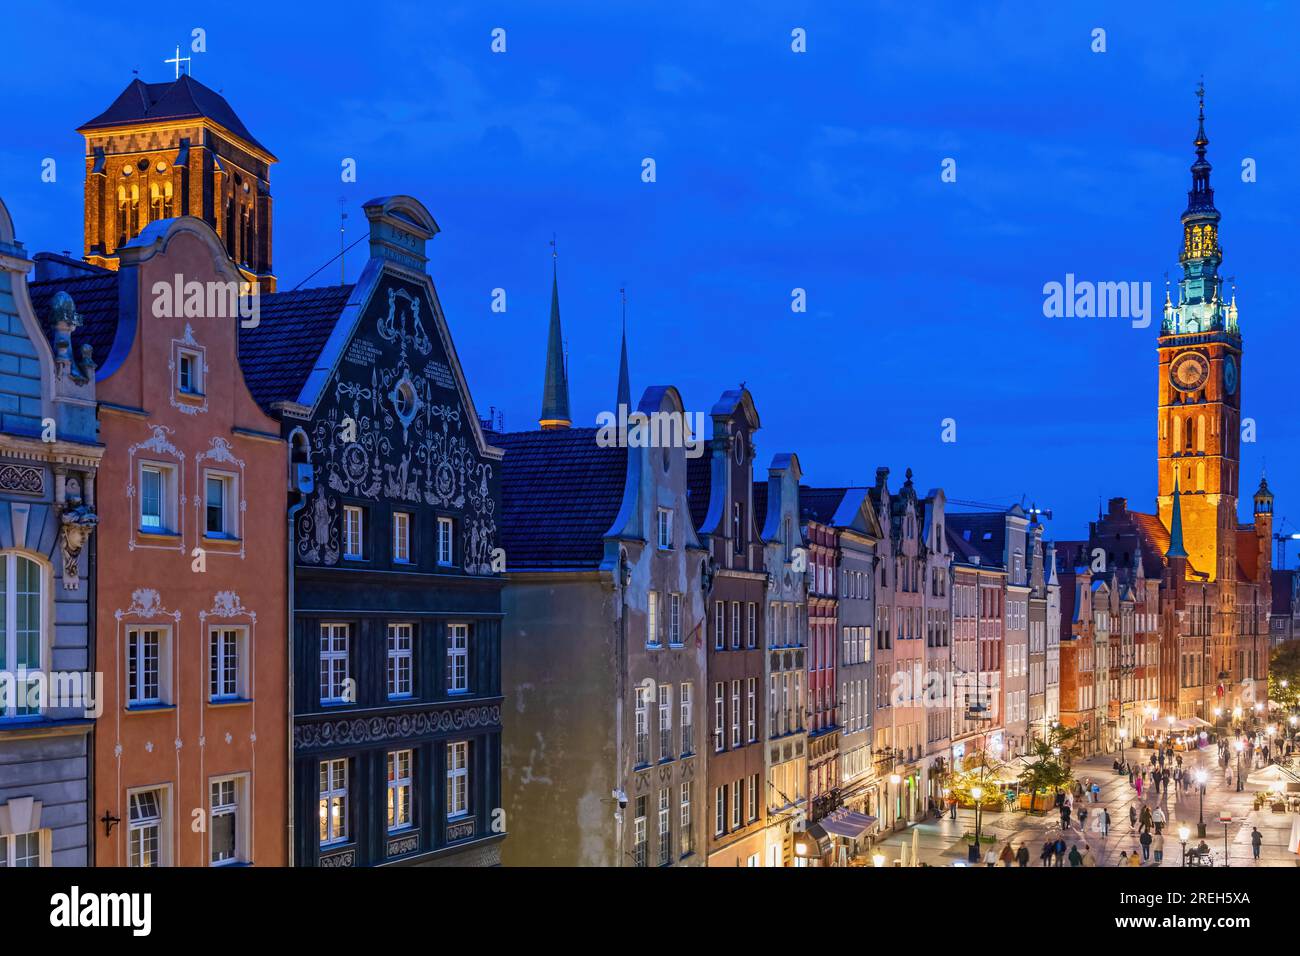 Stadt Danzig bei Nacht in Polen, Altstadt-Skyline an der Long Street gesäumt mit historischen Bürgerhäusern zwischen den Türmen der St. Mary Basilika und der Hauptstadt Stockfoto